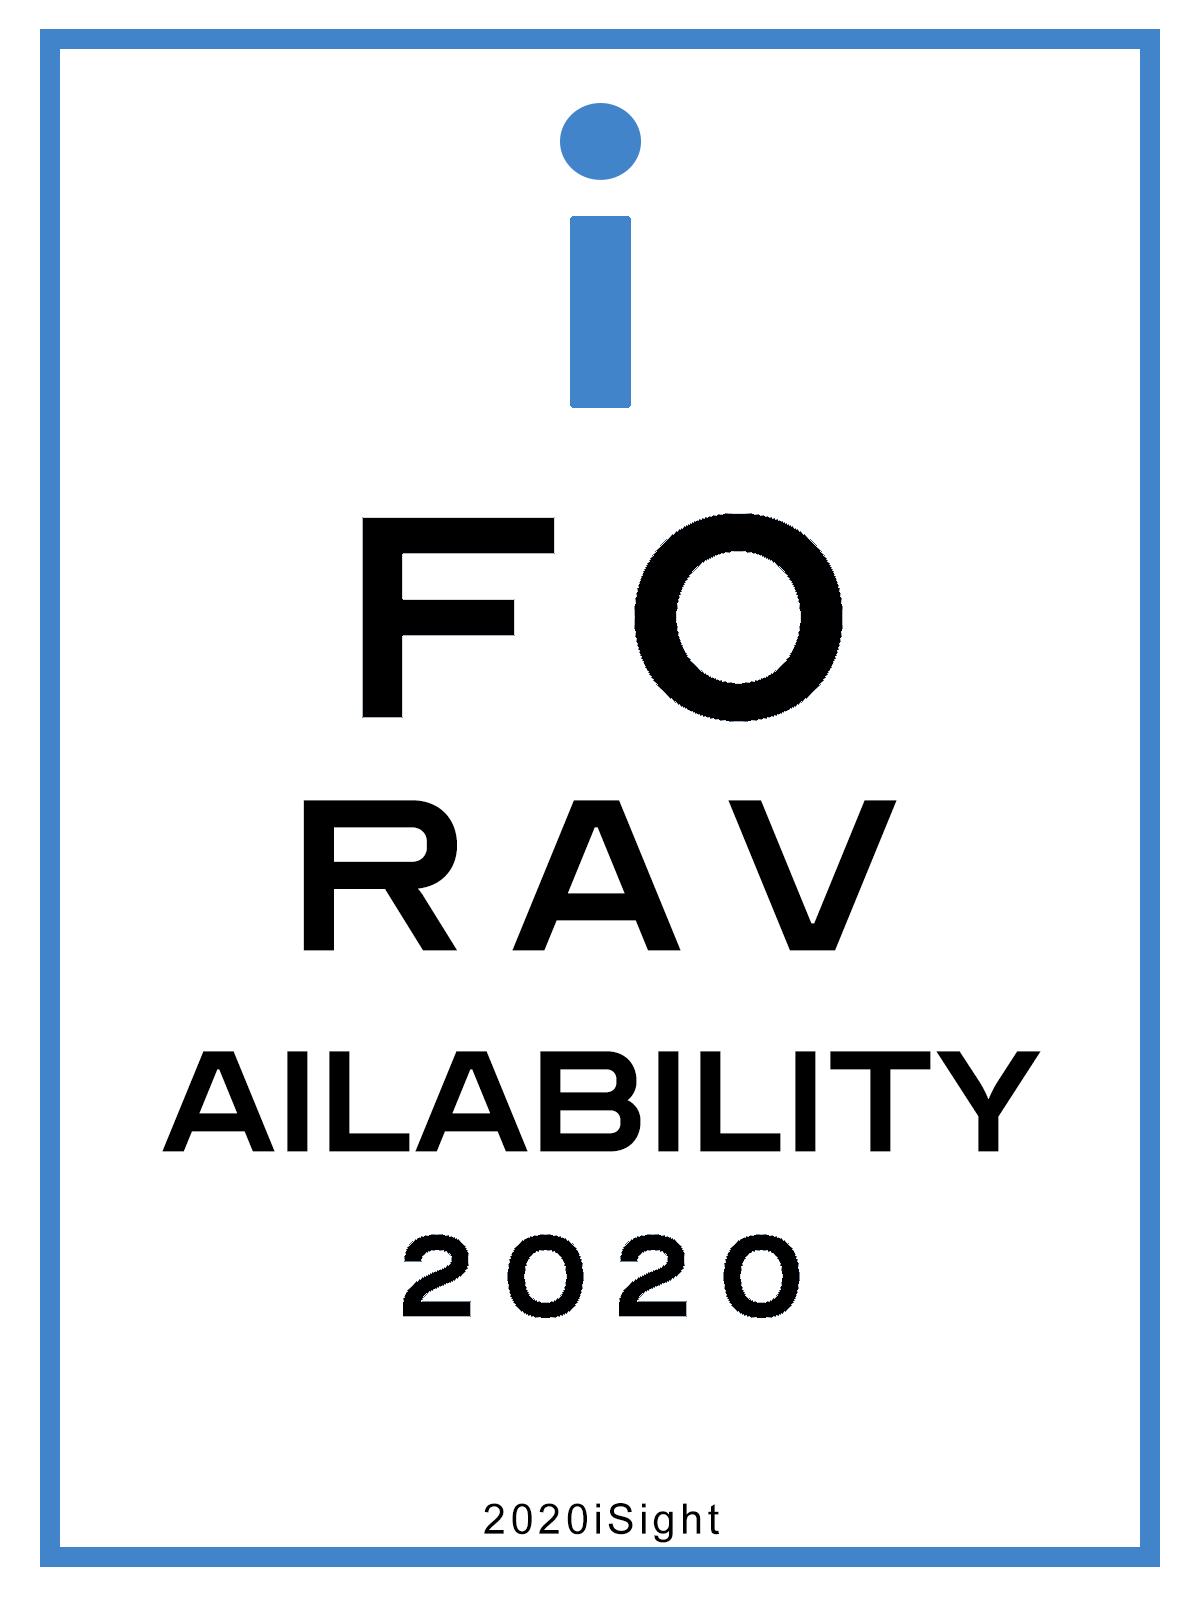 2020 Availability